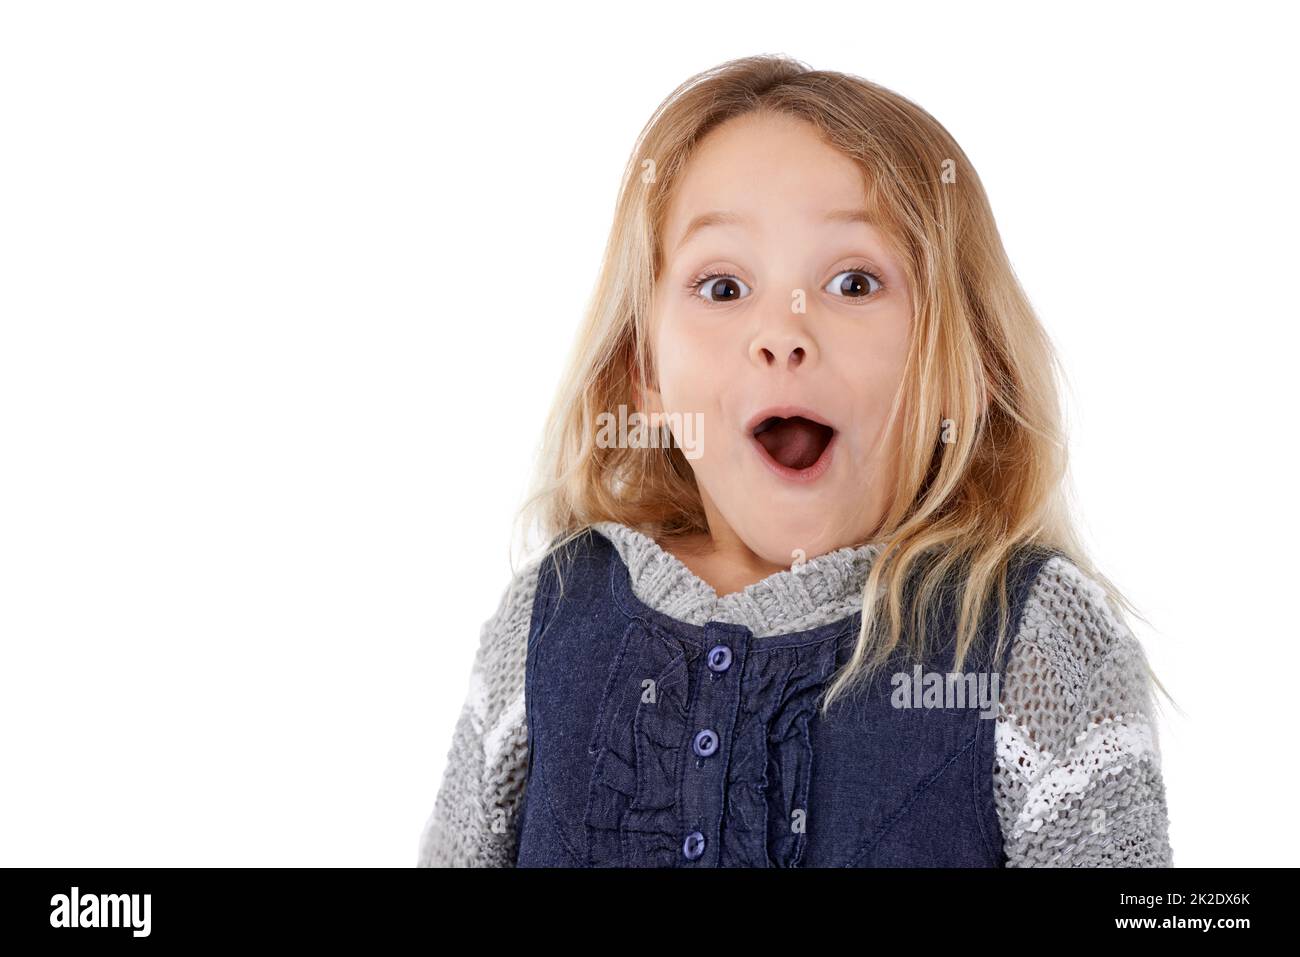 Oh mein. Studioportrait eines überrascht aussehenden kleinen Mädchens. Stockfoto